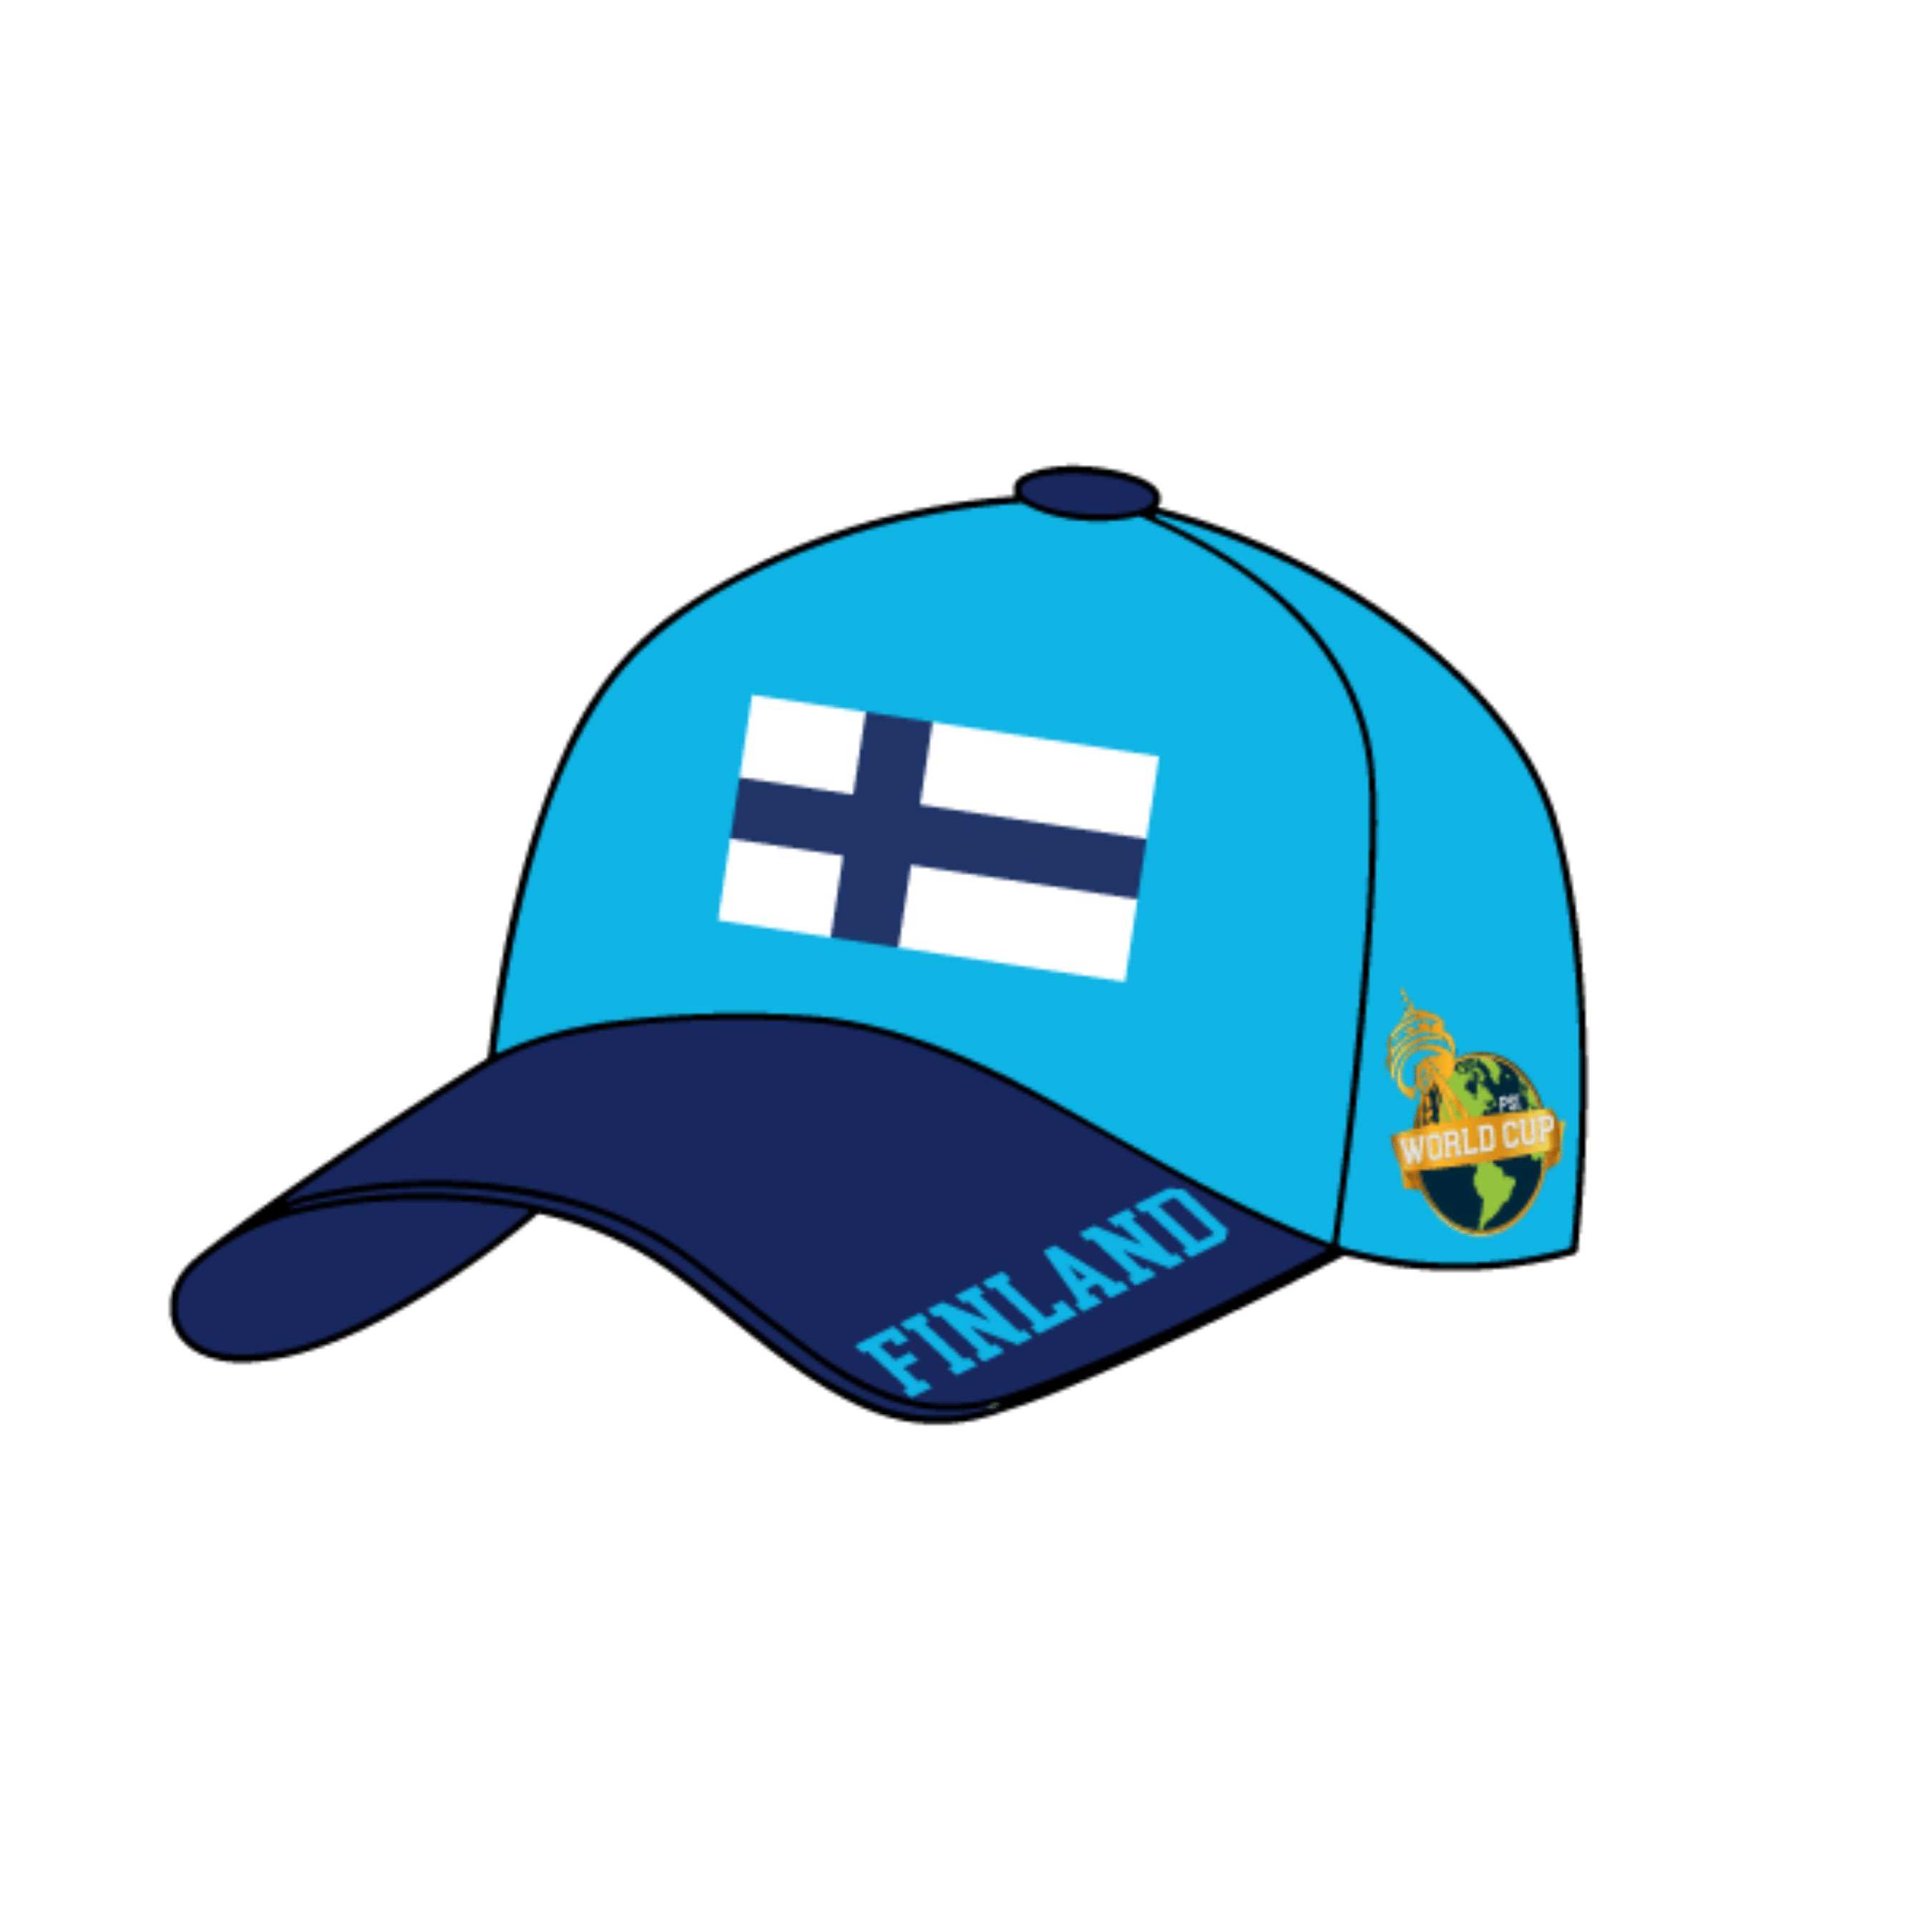 芬兰世界杯帽子